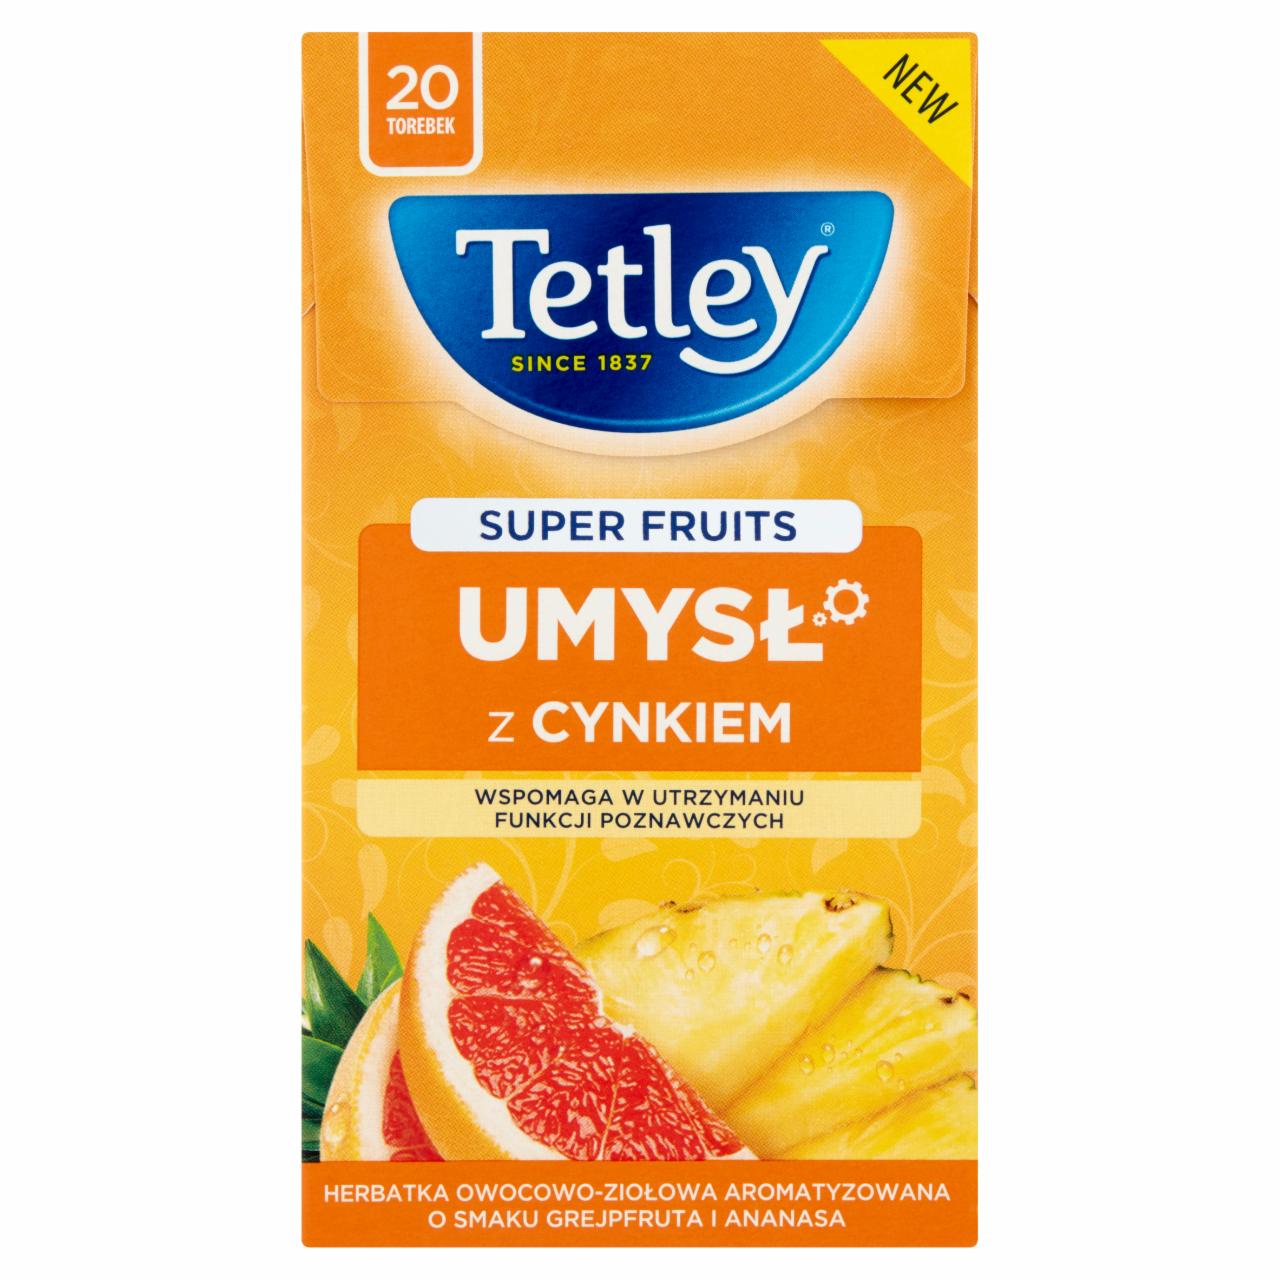 Zdjęcia - Tetley Super Fruits Umysł Herbatka owocowo-ziołowa o smaku grejpfruta i ananasa 40 g (20 torebek)